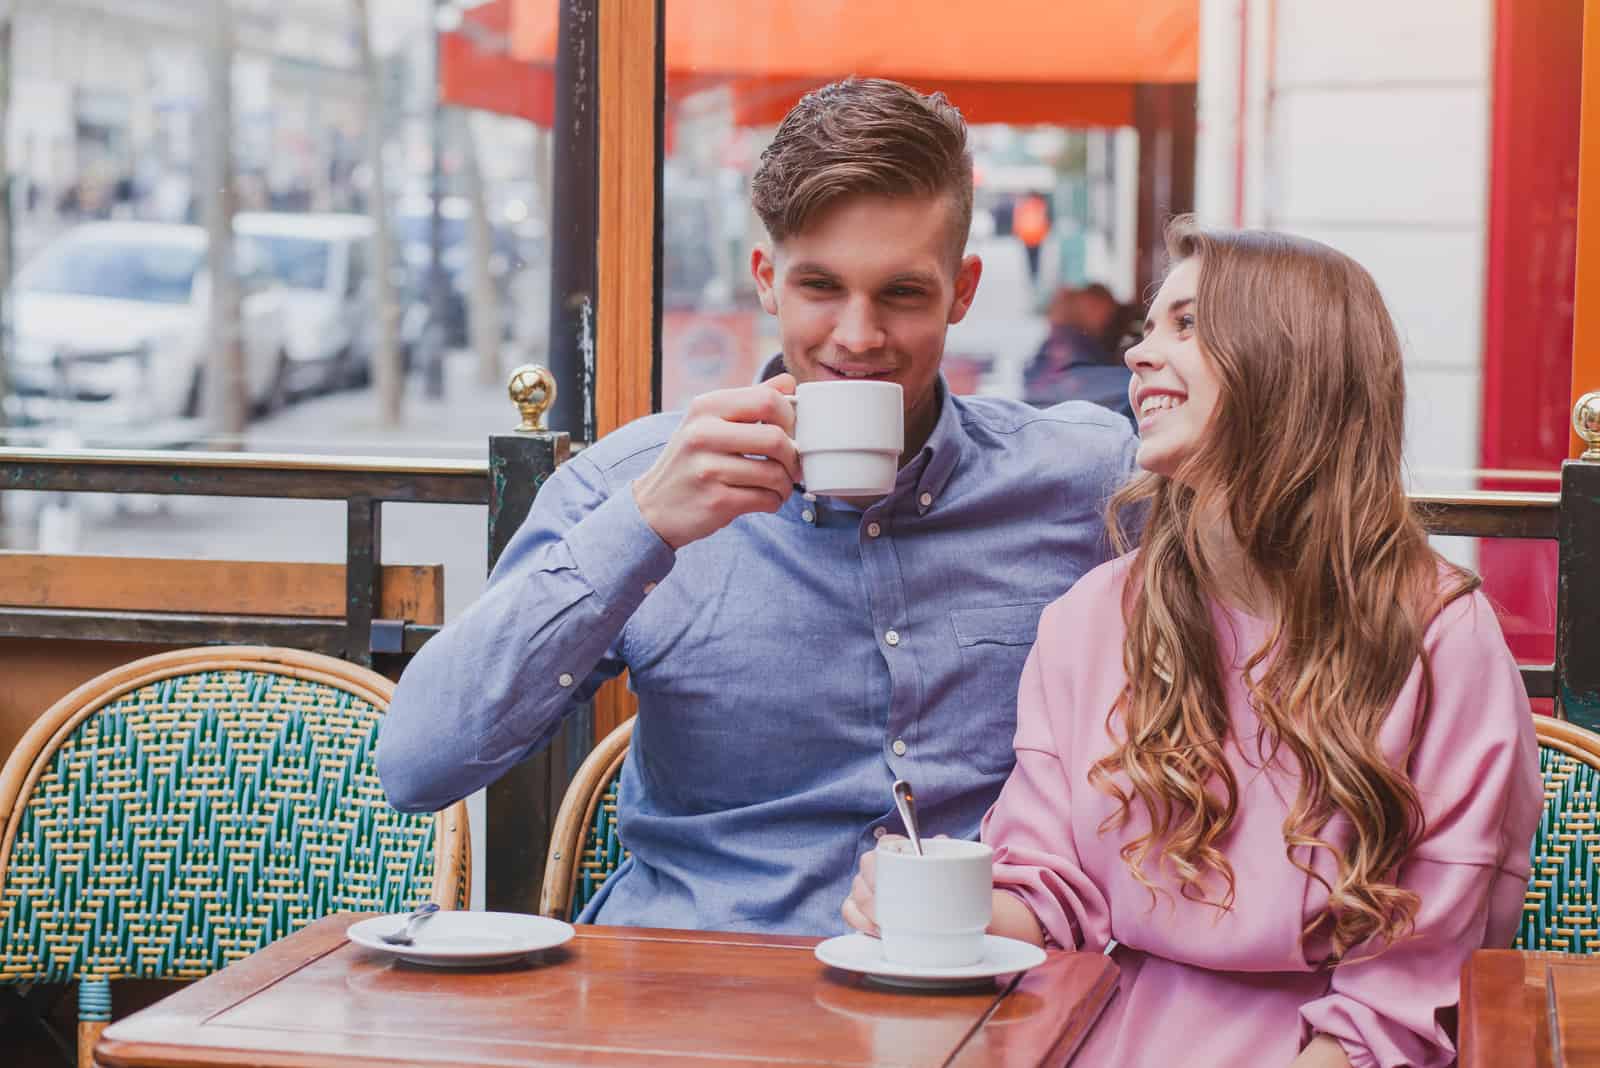 un homme et une femme parlant autour du café